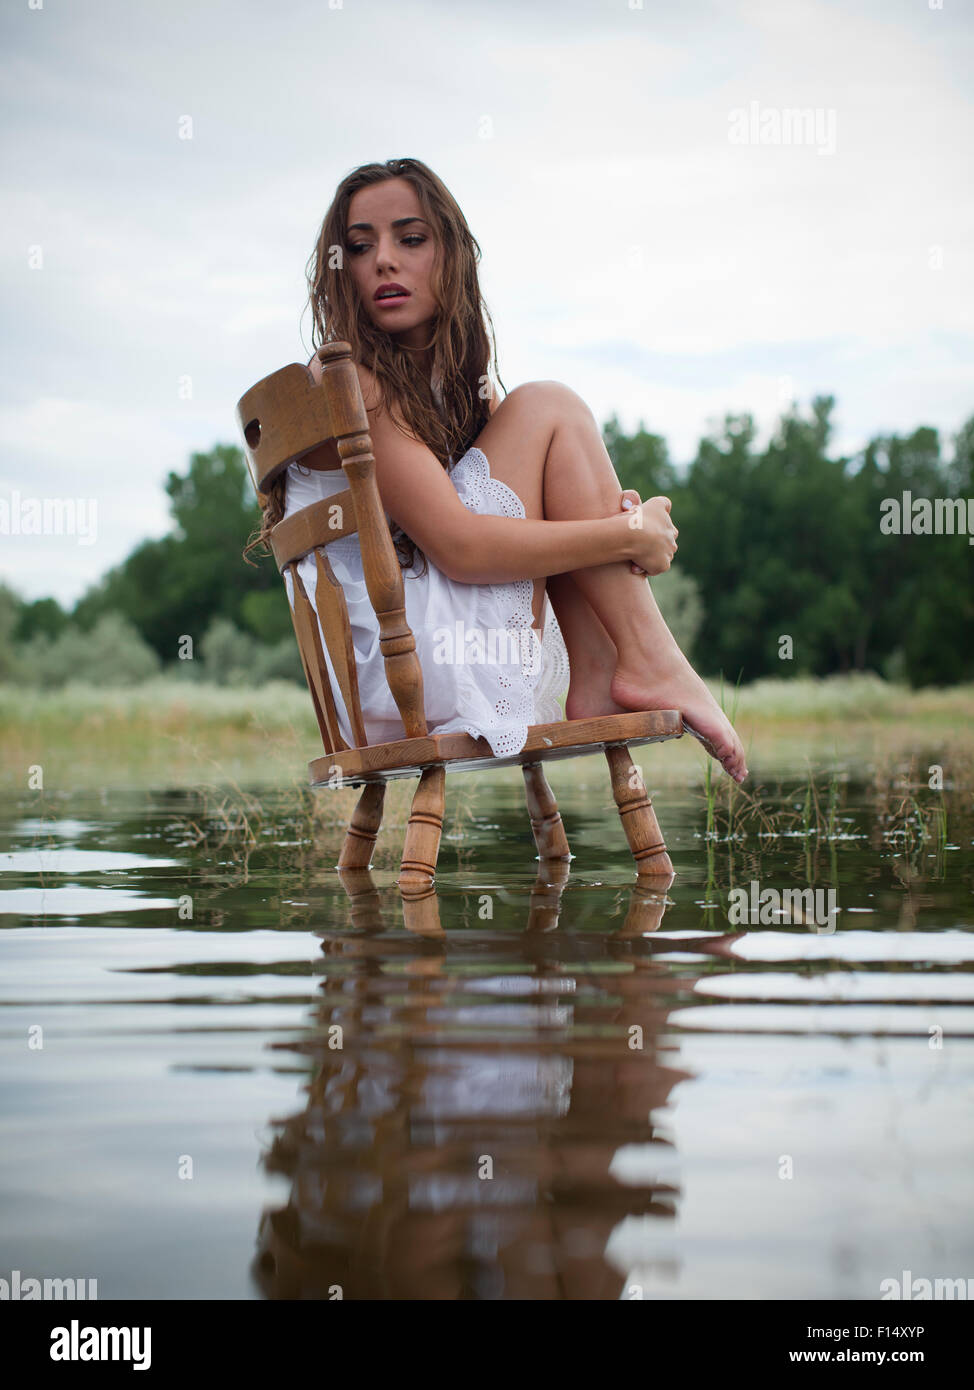 Stati Uniti d'America, Utah, Provo, donna seduta su una sedia nel lago Foto Stock